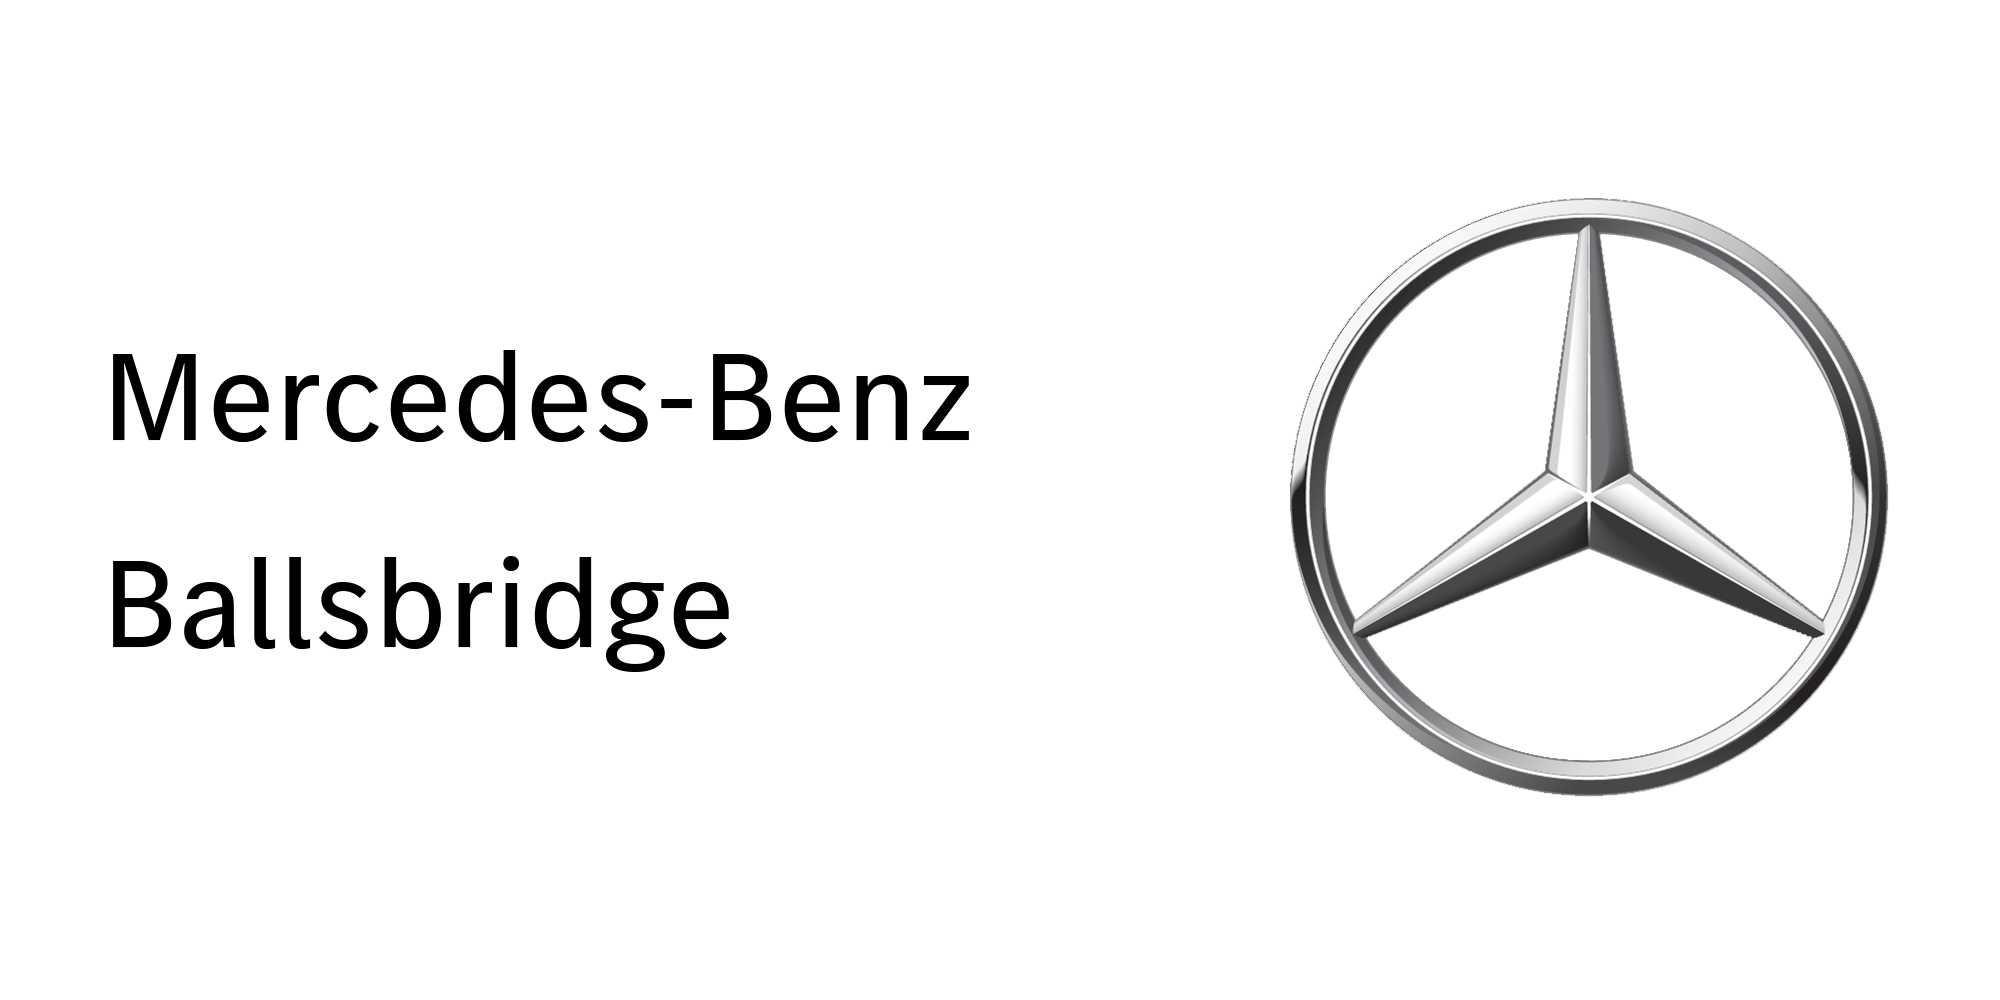 Mercedes-Benz Ballsbridge